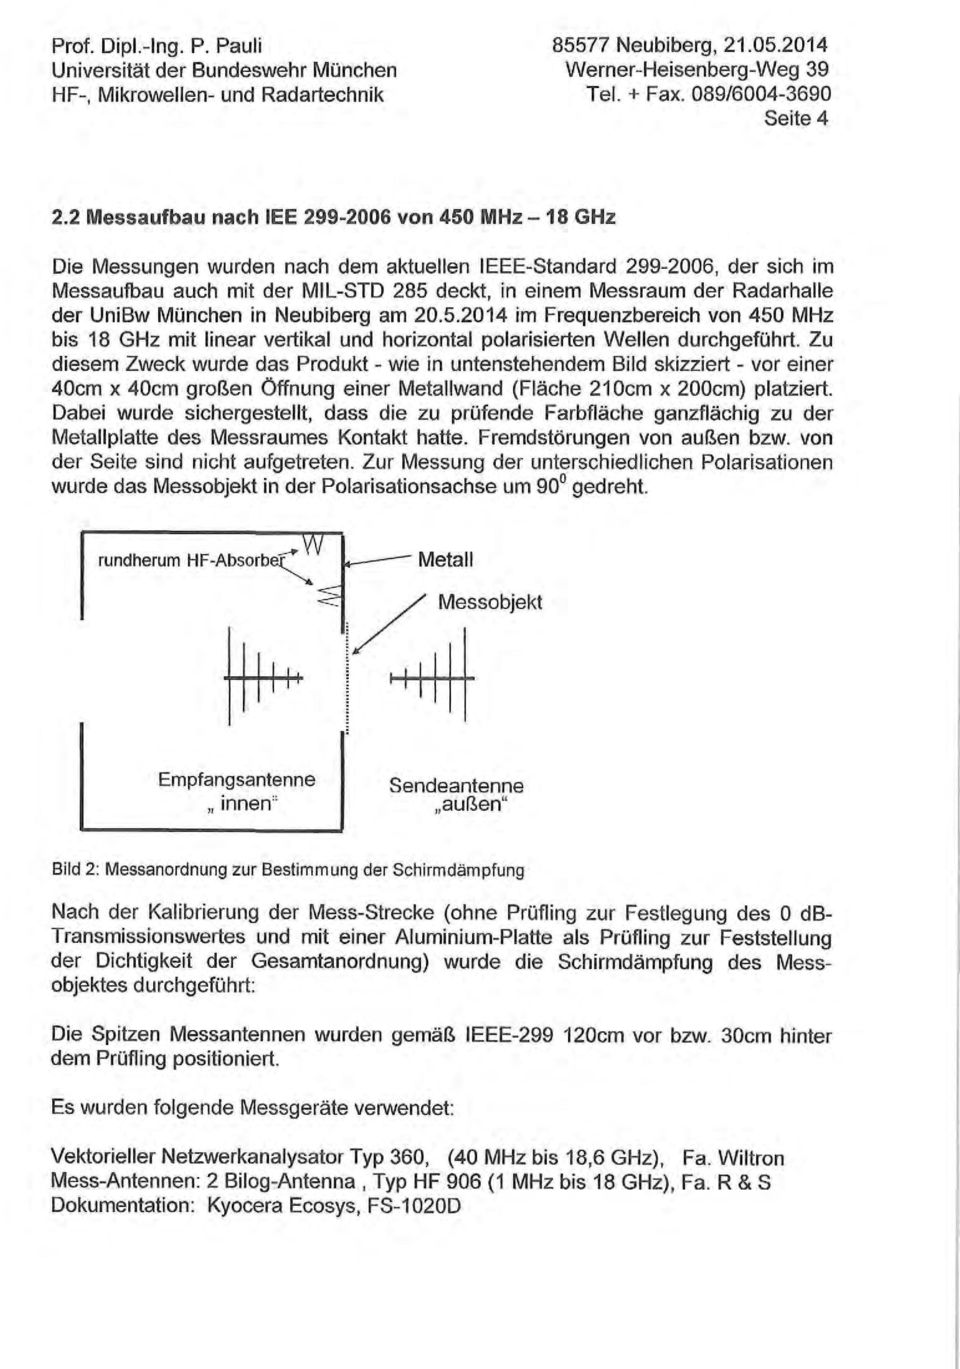 der UnBw München n Neubberg am 20.5.2014 m Frequenzberech von 450 MHz bs 18 GHz mt lnear vertkal und horzontal polarserten Wellen durchgeführt.